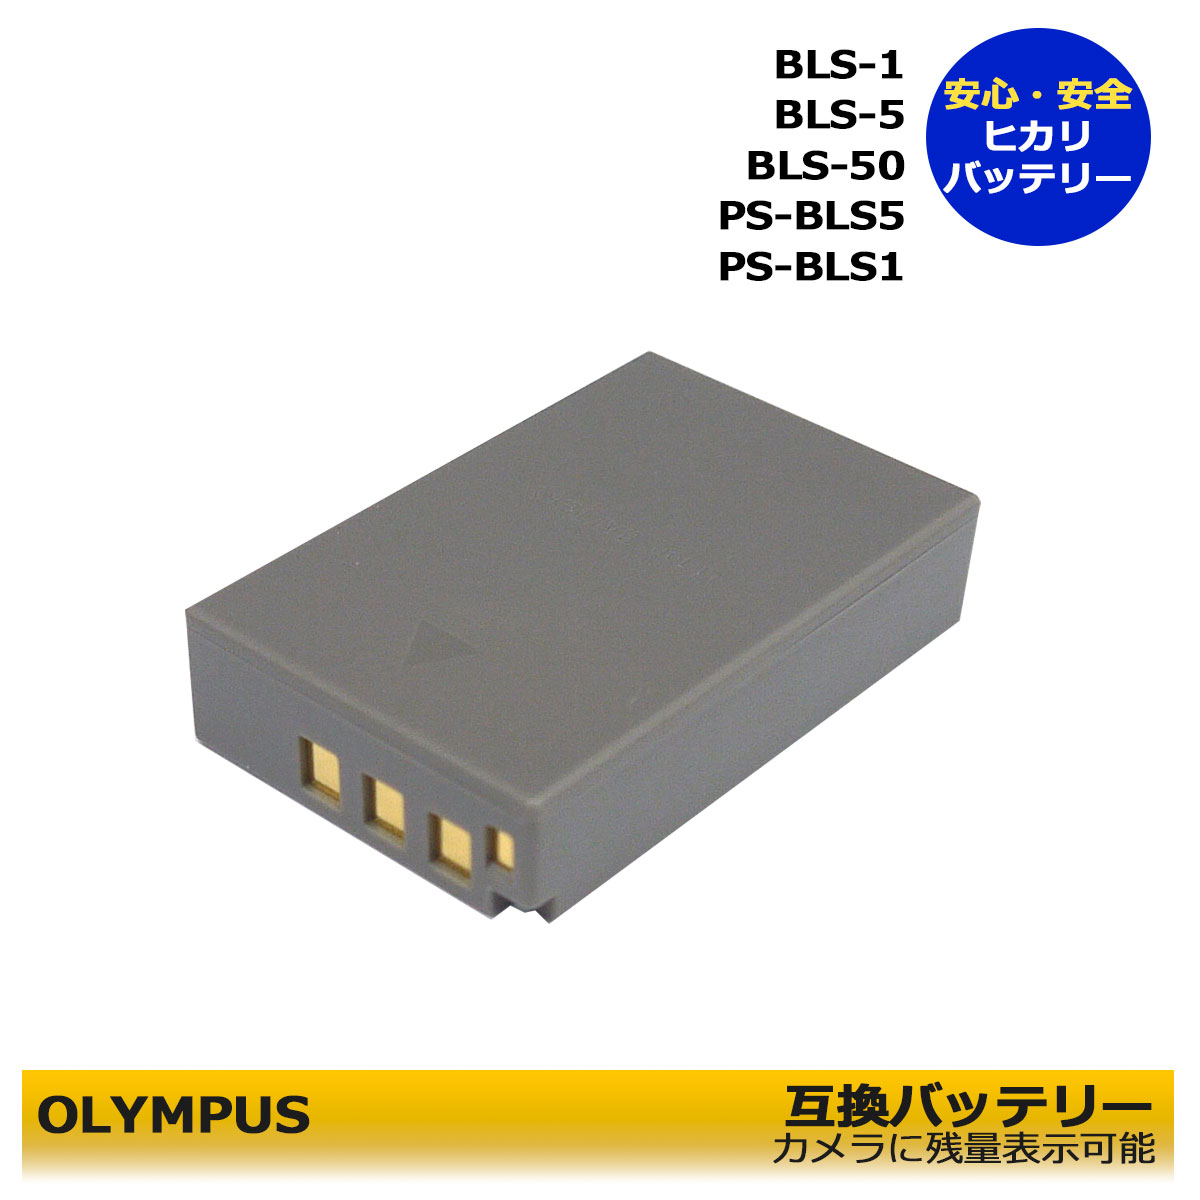 BLS-5 / BLS-50 / BLS-1【Olympus